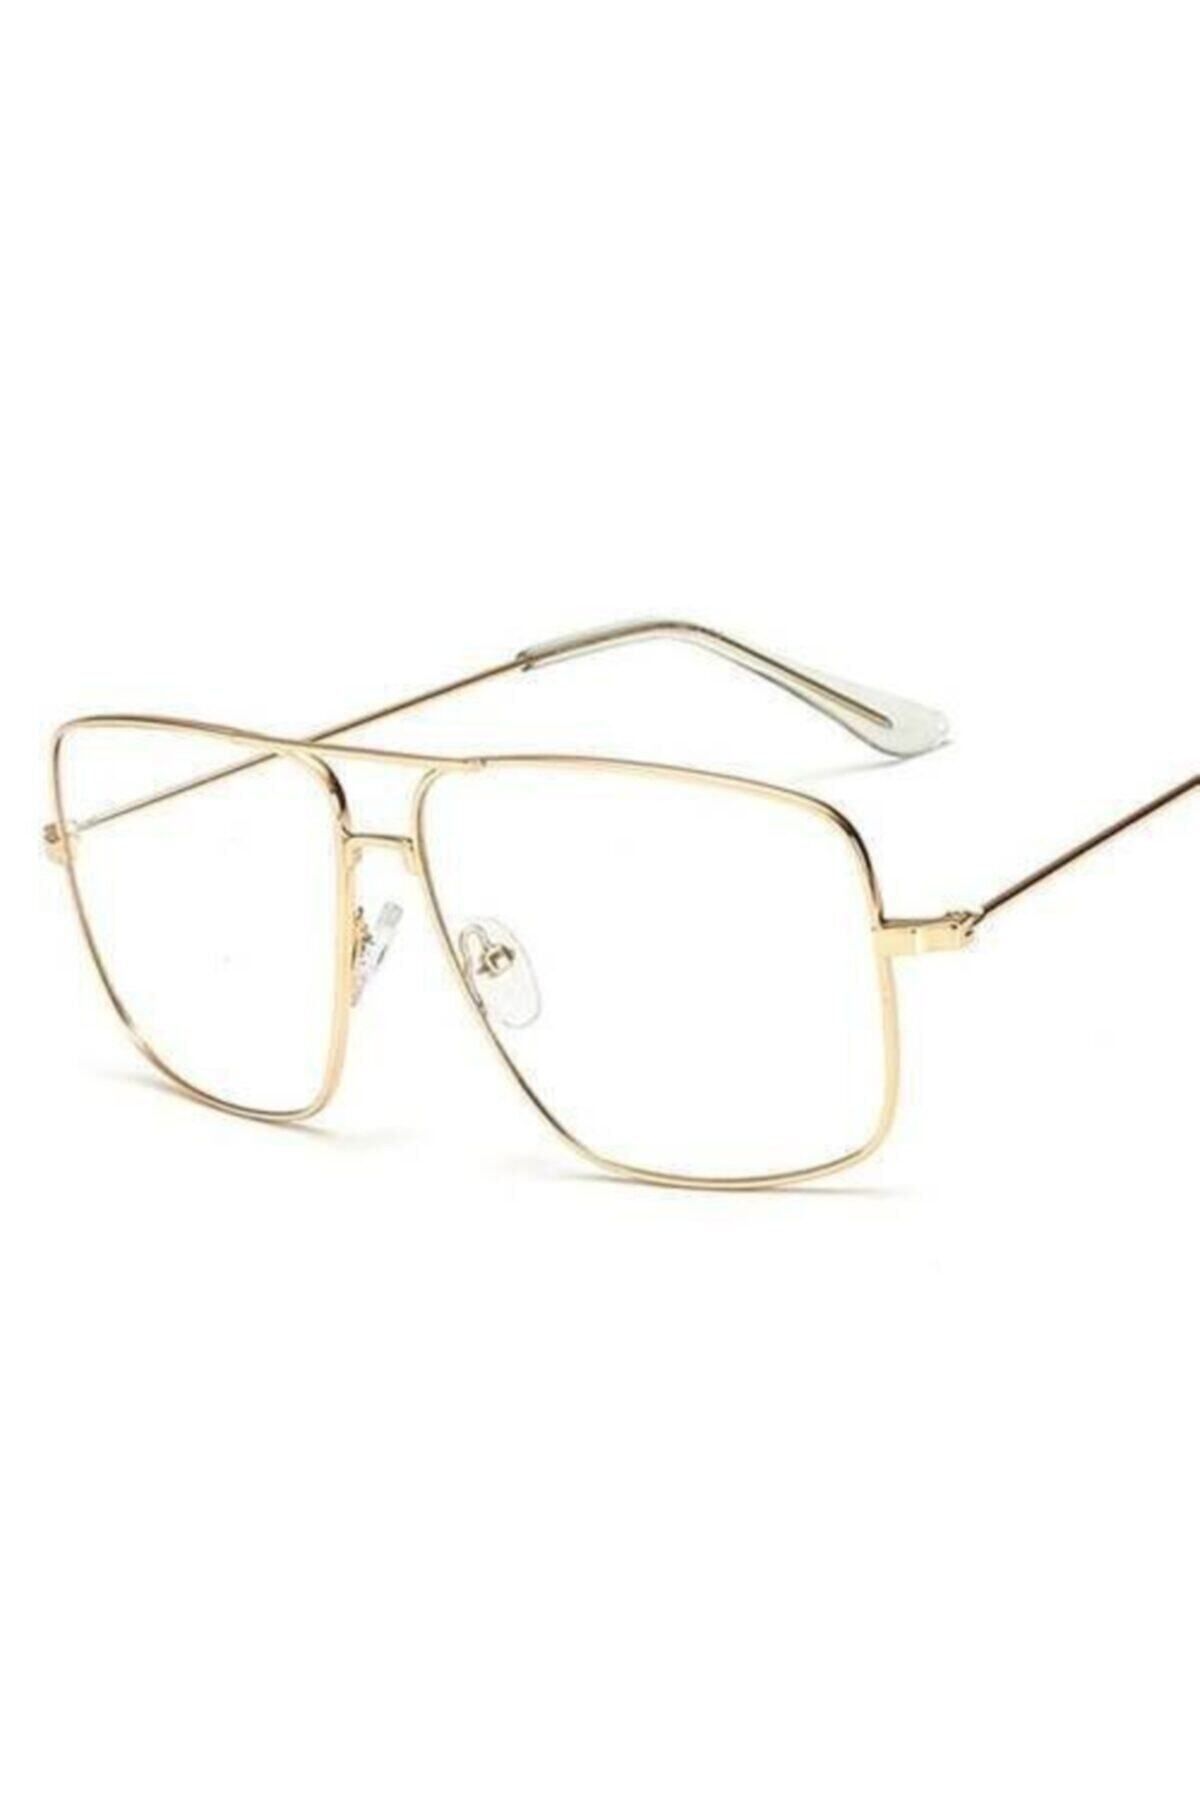 büyükmarket Erkek GözlükYeni Tasarım Reynmen Gözlüğü Damla Pilot Çerçeve Klasik Tarz